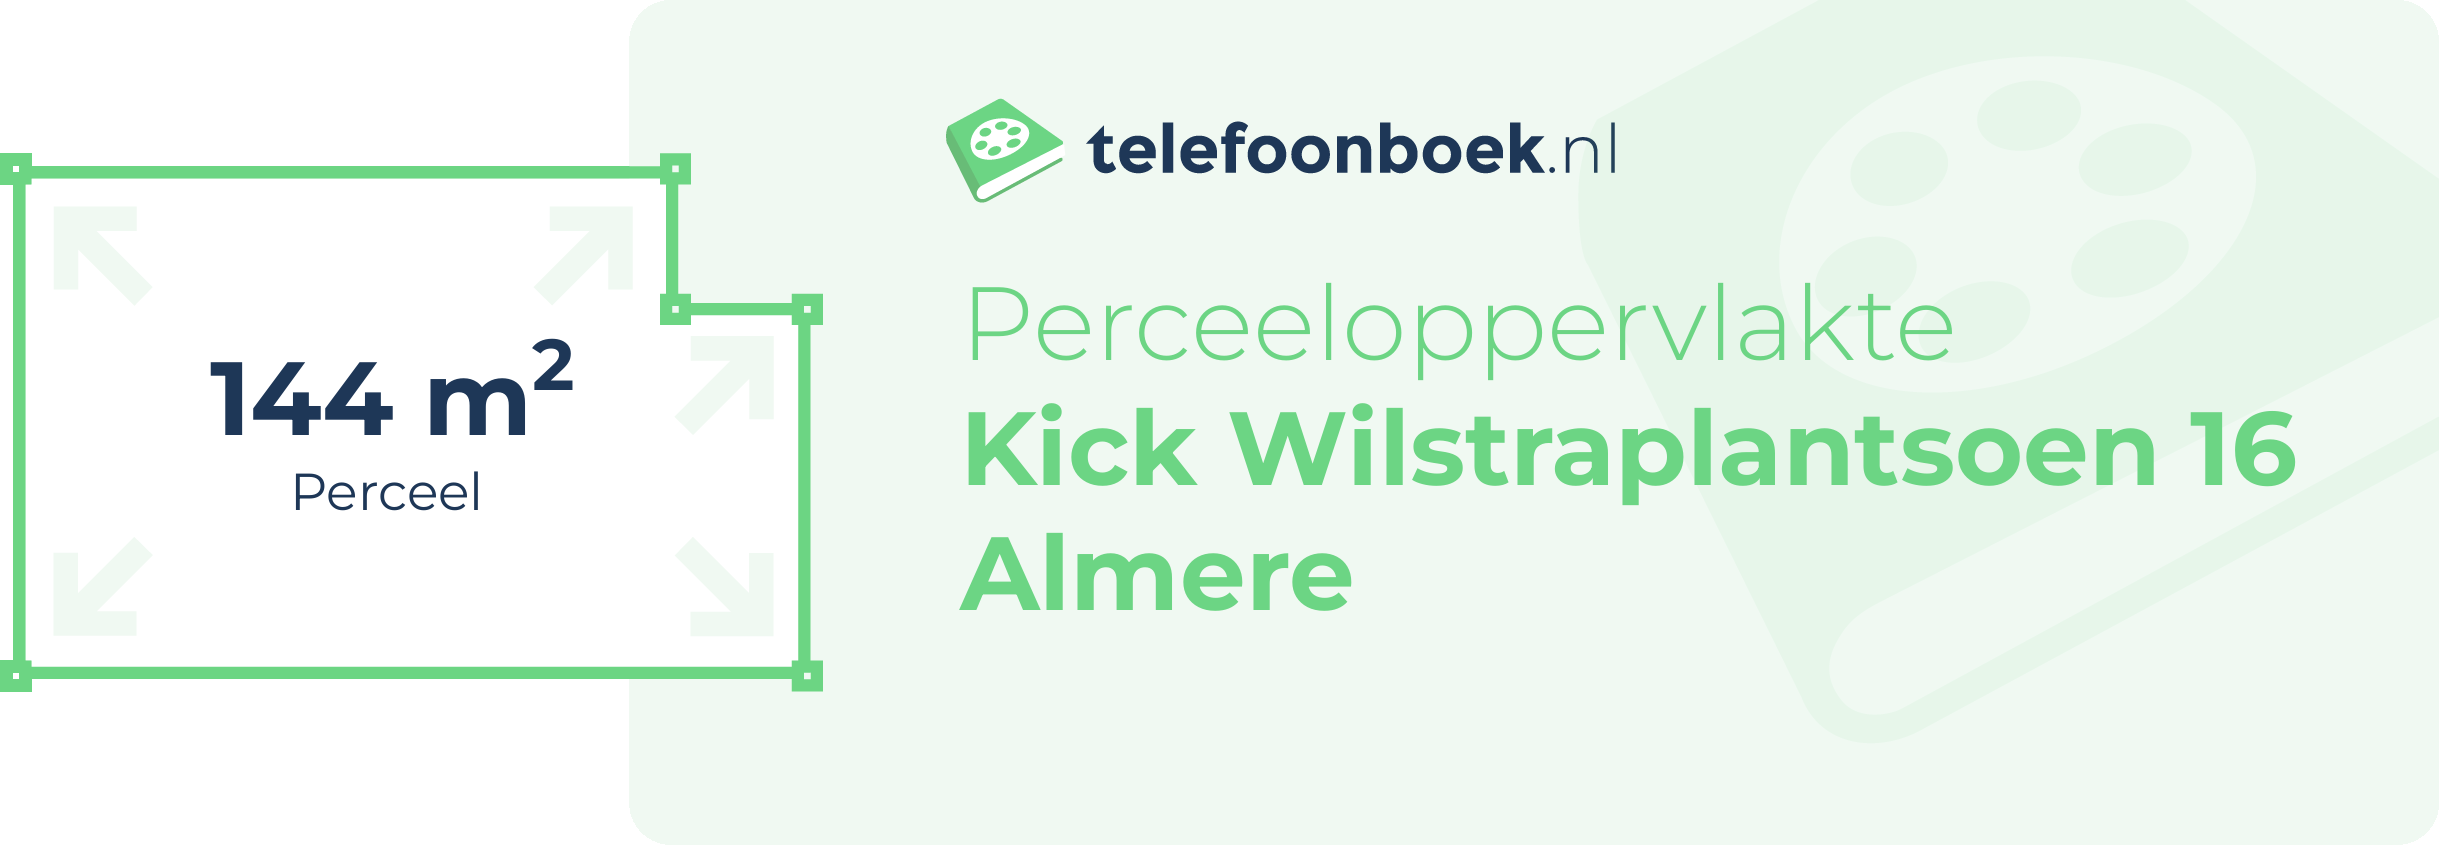 Perceeloppervlakte Kick Wilstraplantsoen 16 Almere